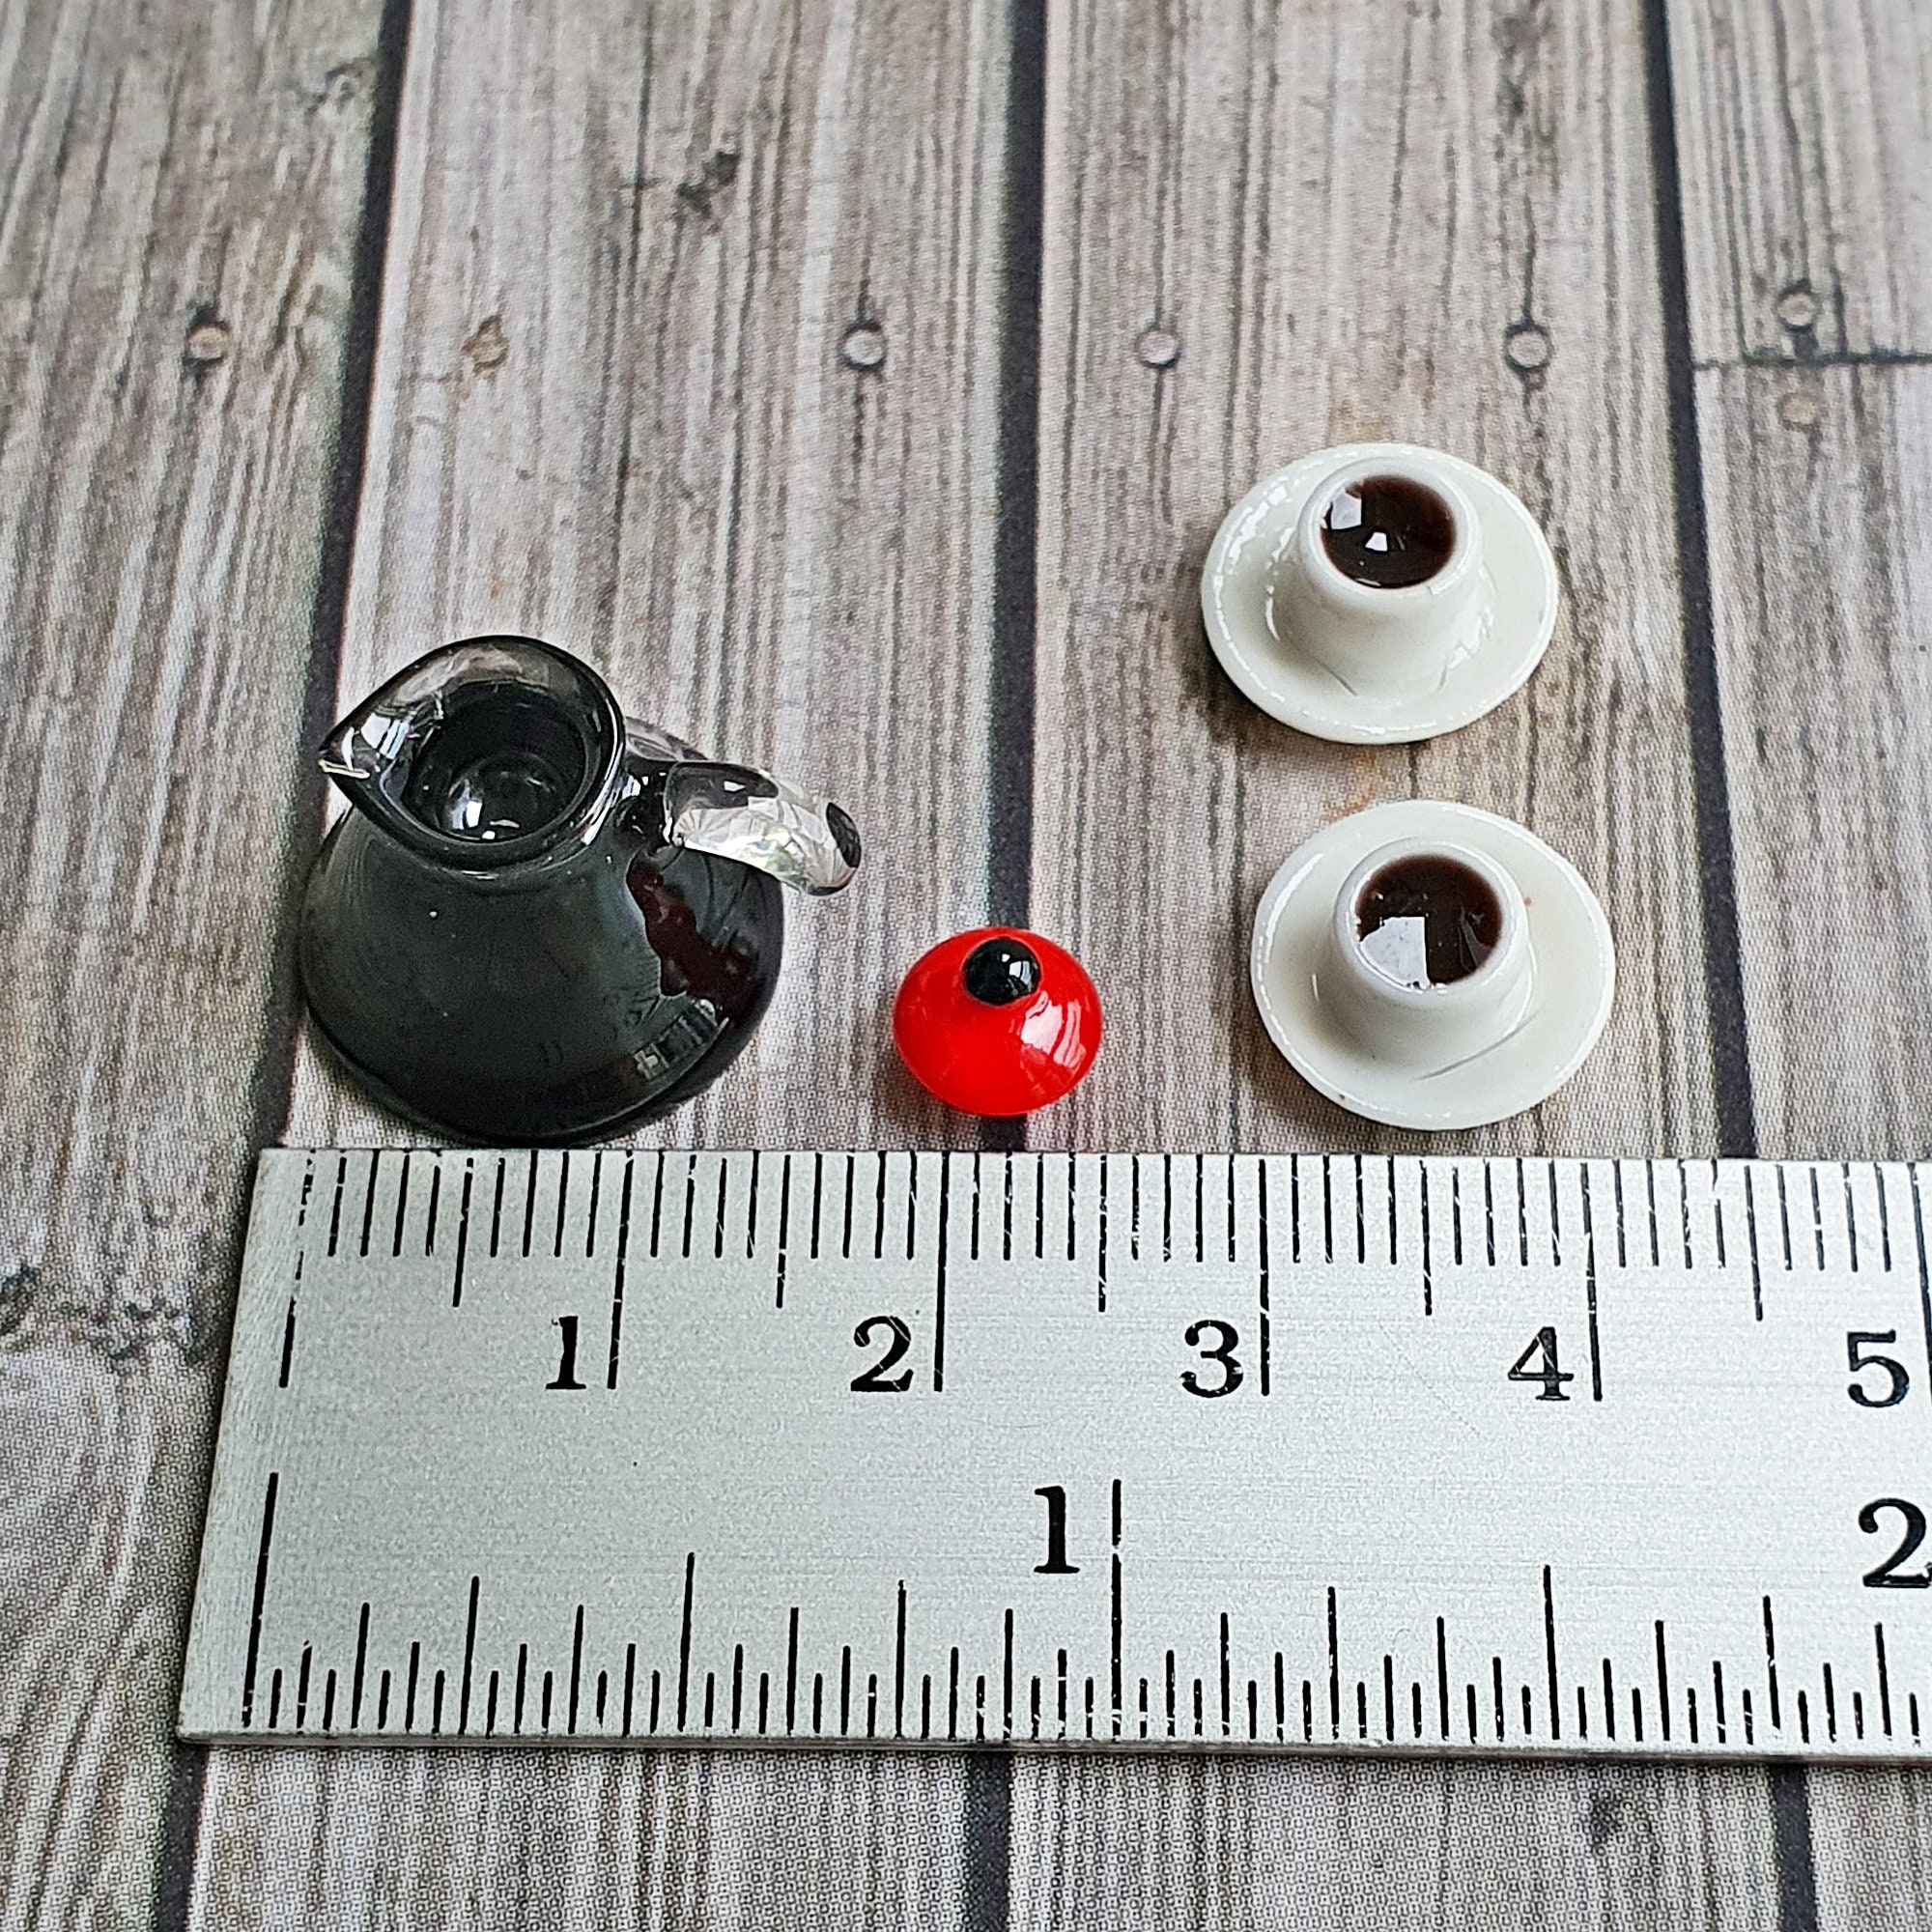 10 Stk Miniatur Backblech Kochgeschirr Modell für 1:12 Puppenstuben Zubehör 